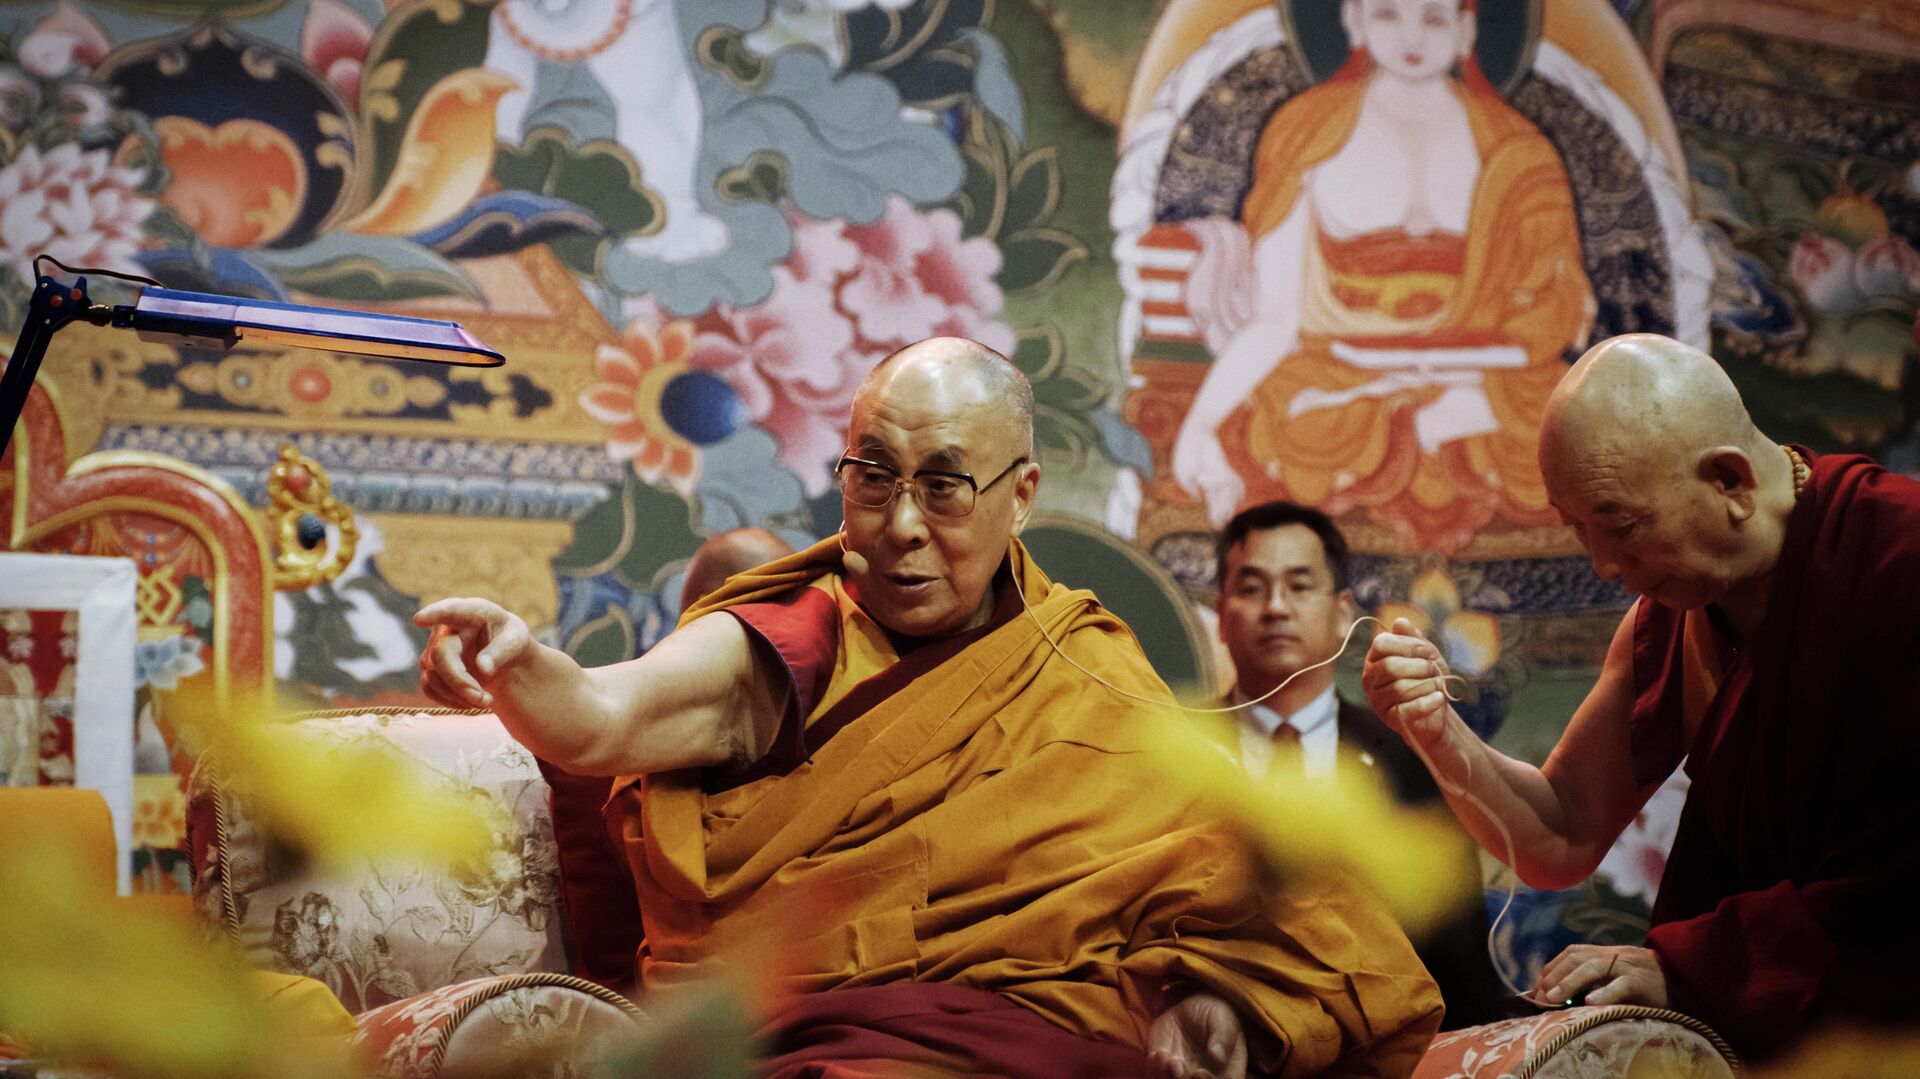 Духовный лидер буддистов Далай-лама XIV проводит в Риге лекцию для жителей стран Балтии и России - РИА Новости, 1920, 05.06.2020